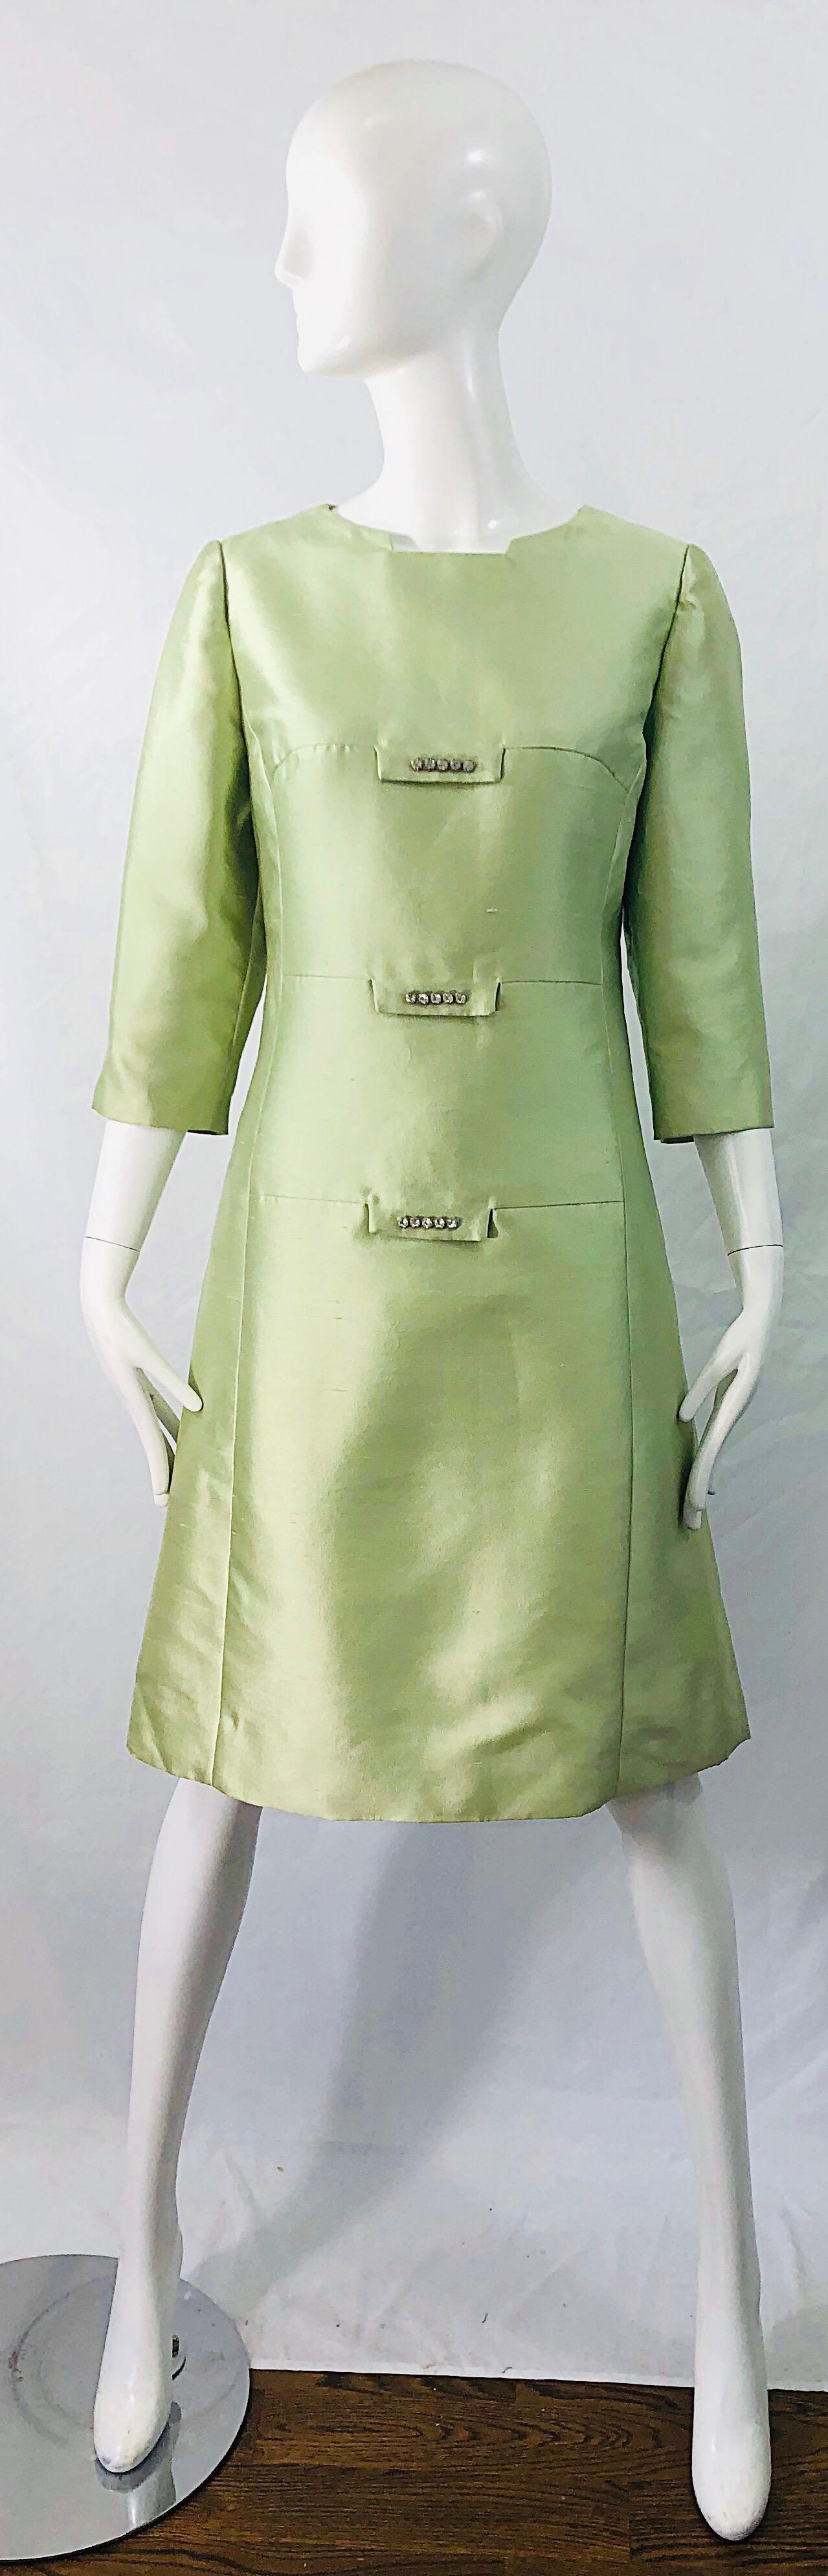 Robe A-Line chic des années 1960 en shantung de soie brute vert menthe incrustée de strass ! Comporte une encolure architecturale. Un corsage ajusté et une jupe indulgente de type A-Line. Fermeture éclair cachée dans le dos avec fermeture à crochet.